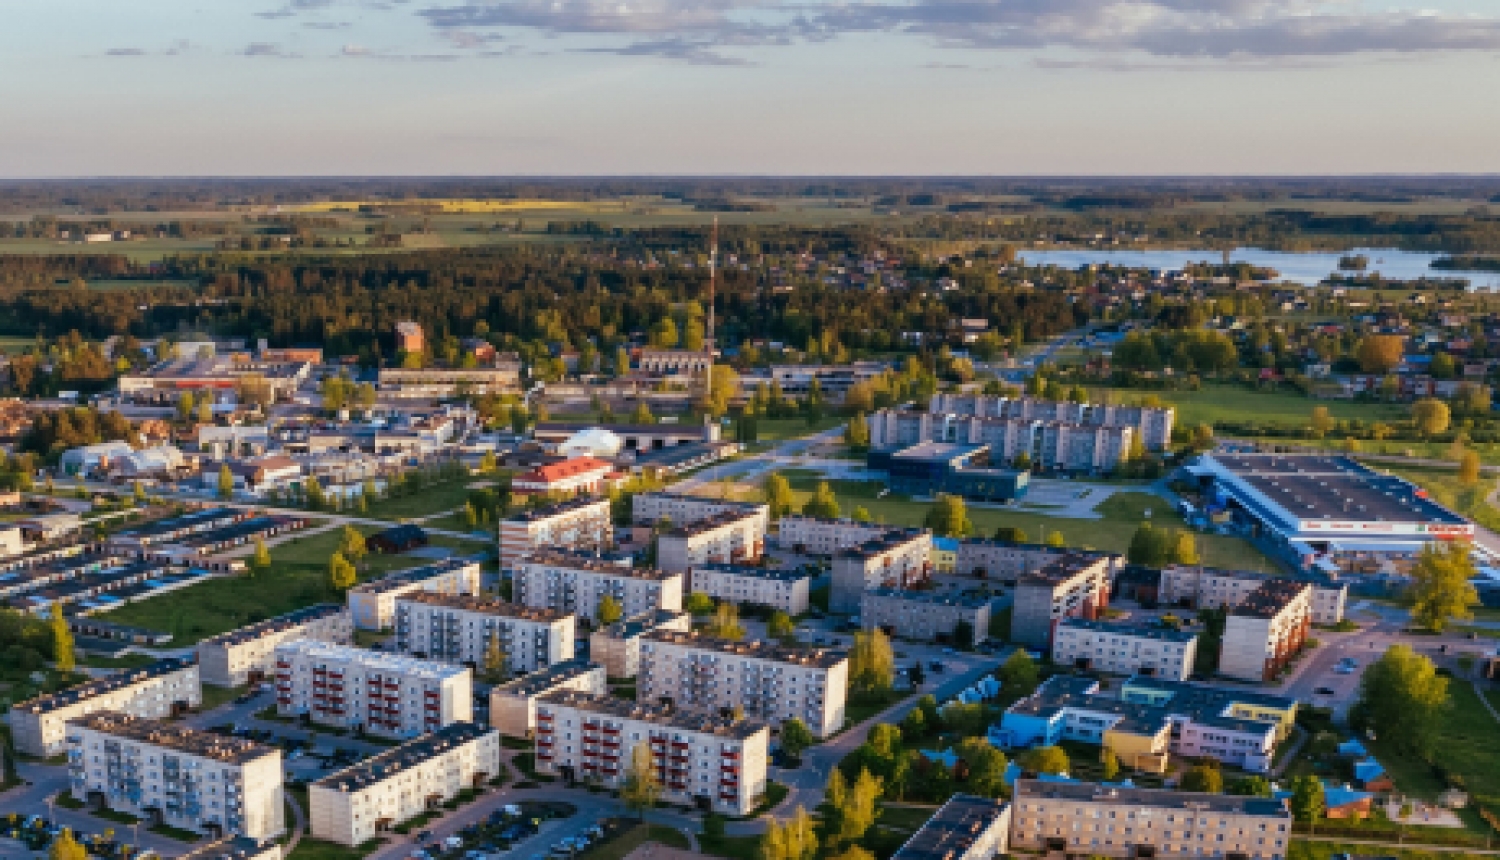 Kā saņemt Jēkabpils pilsētas pašvaldības līdzfinansējumu daudzdzīvokļu dzīvojamai mājai piesaistītā zemesgabala labiekārtošanai